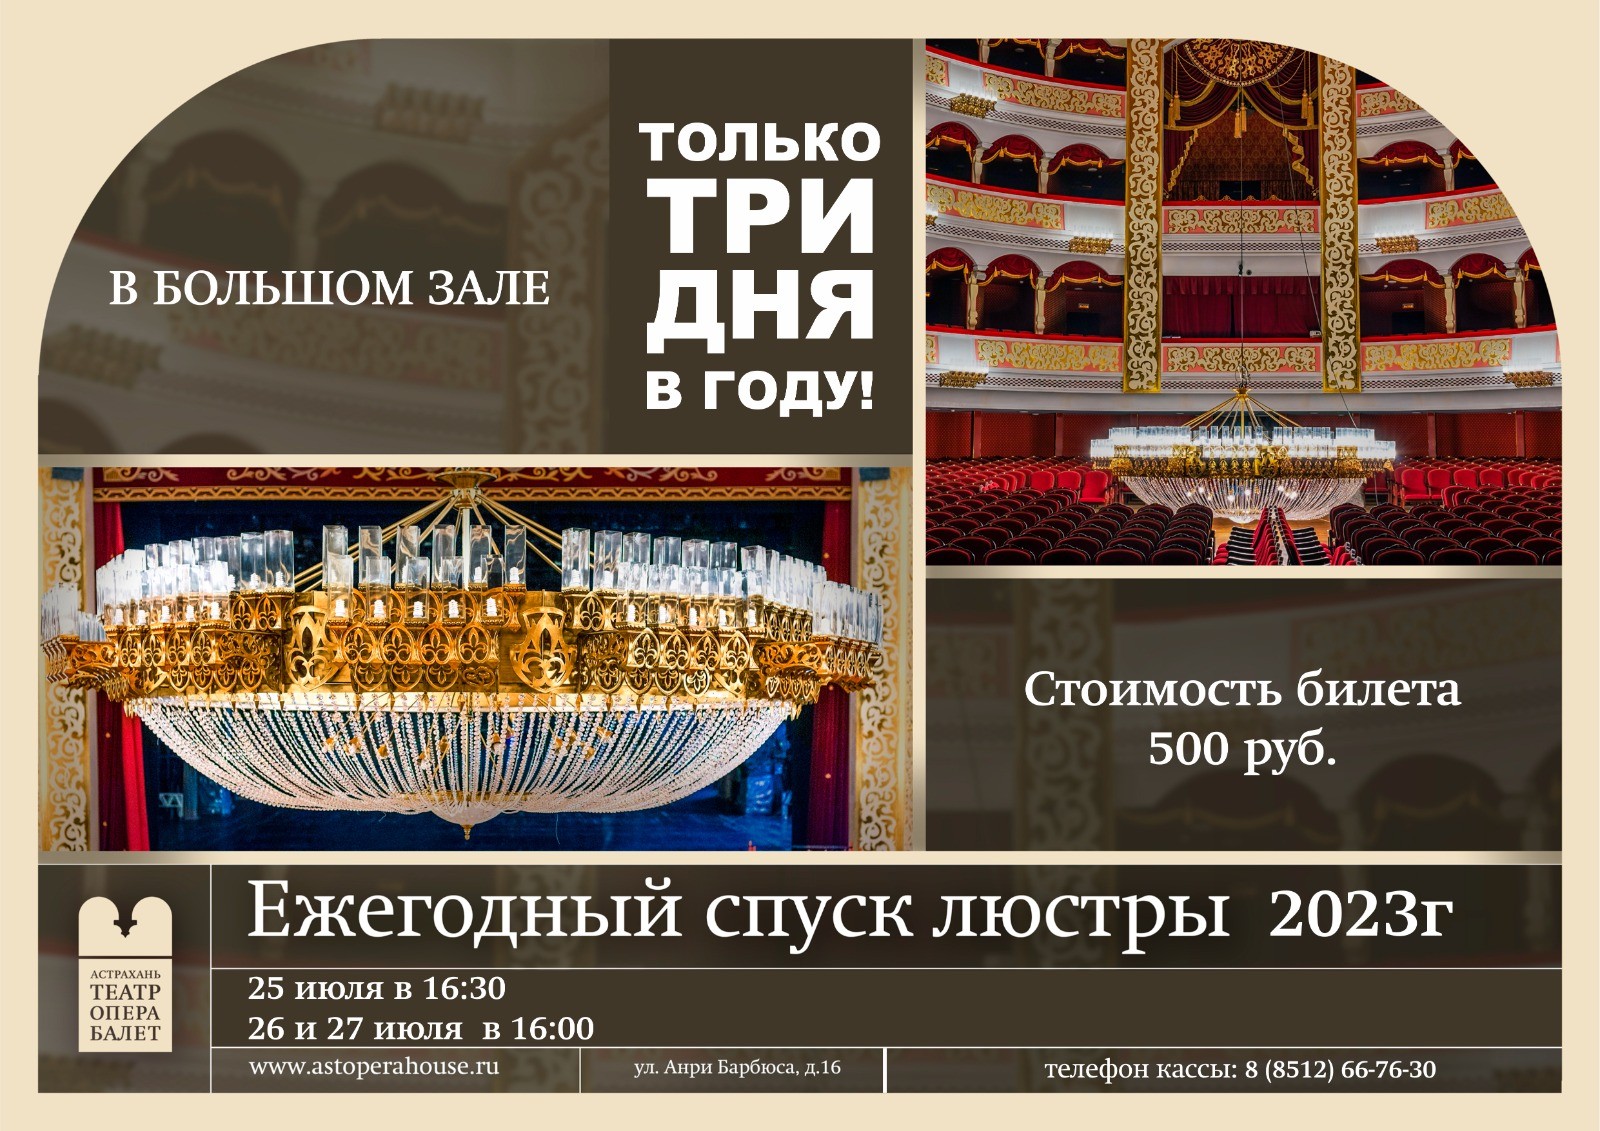 25 июля в Большом зале Астраханского театра оперы и балета состоится традиционный спуск хрустальной люстры